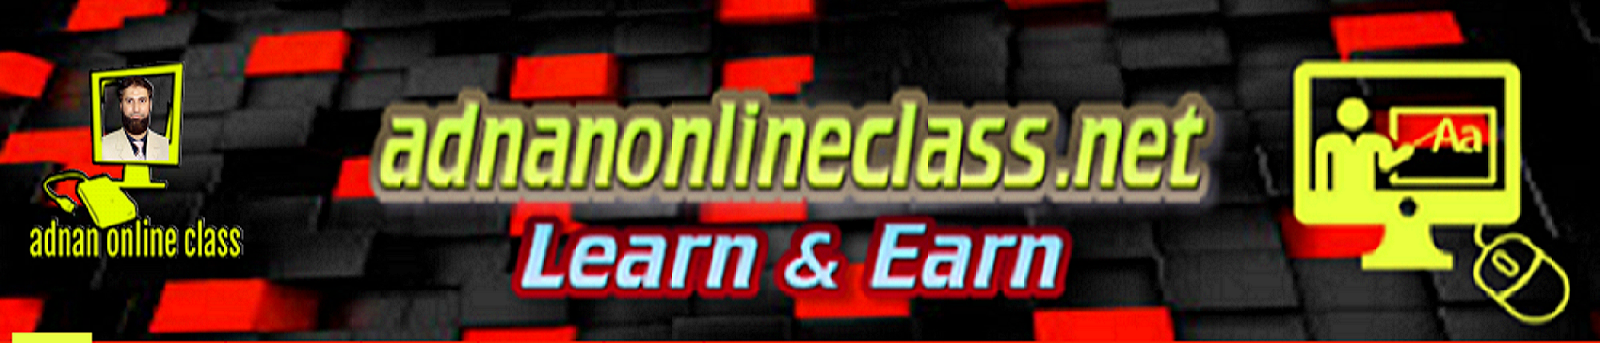 Adnan Online Class